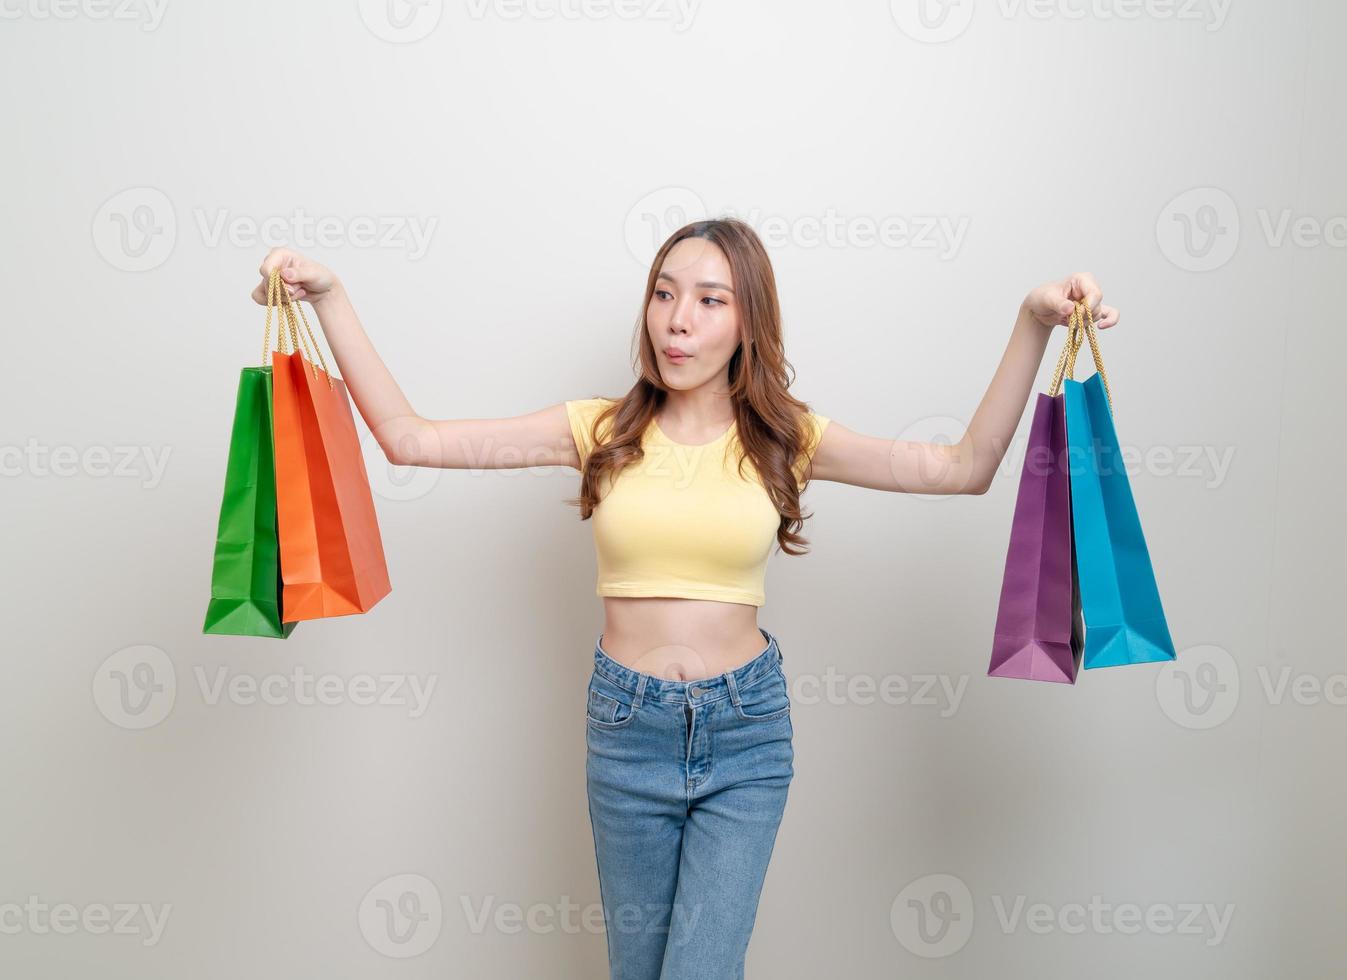 ritratto bella donna asiatica che tiene la borsa della spesa su sfondo bianco foto